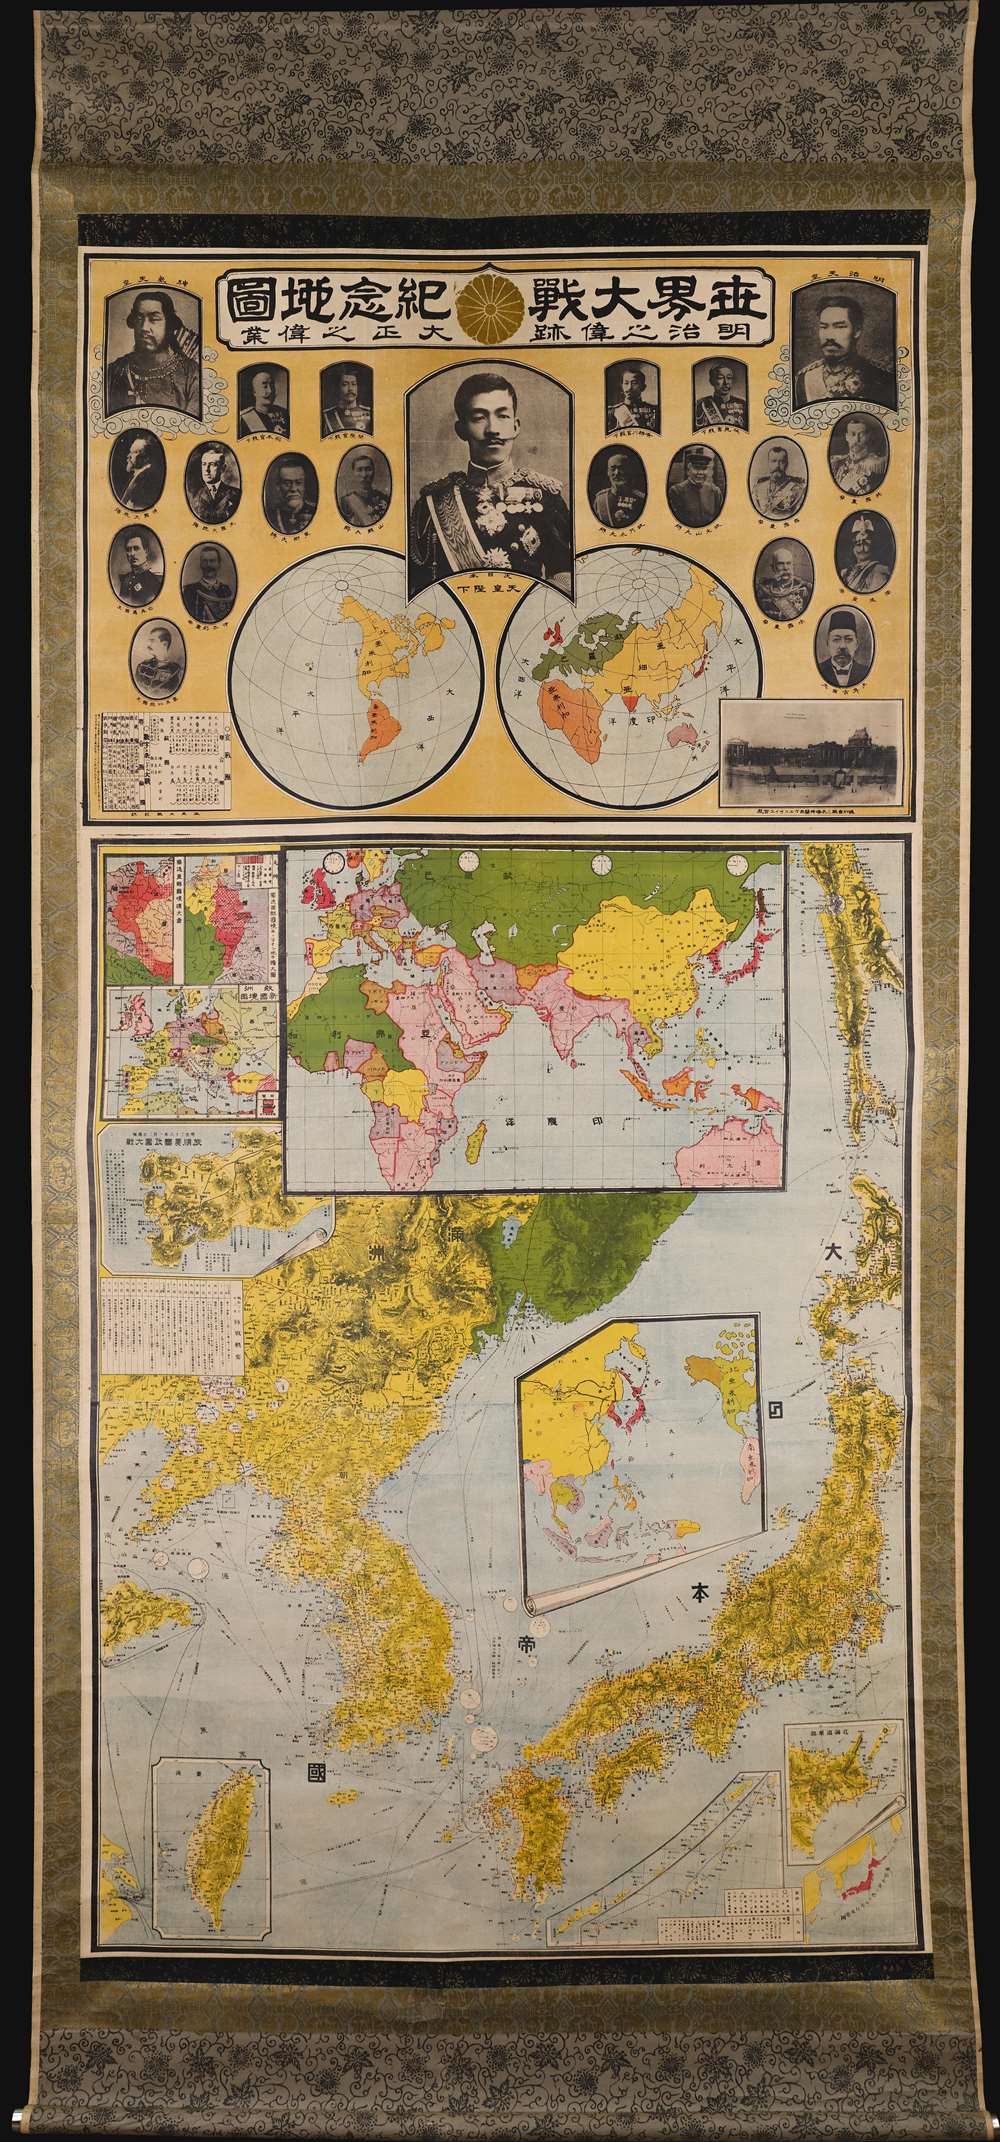 世界大戰紀念地圖 明治之偉跡 大正之偉業  / [Commemorative Map of the World War. The Great Footprint of Meiji, the Great Undertaking of Taisho]. - Main View